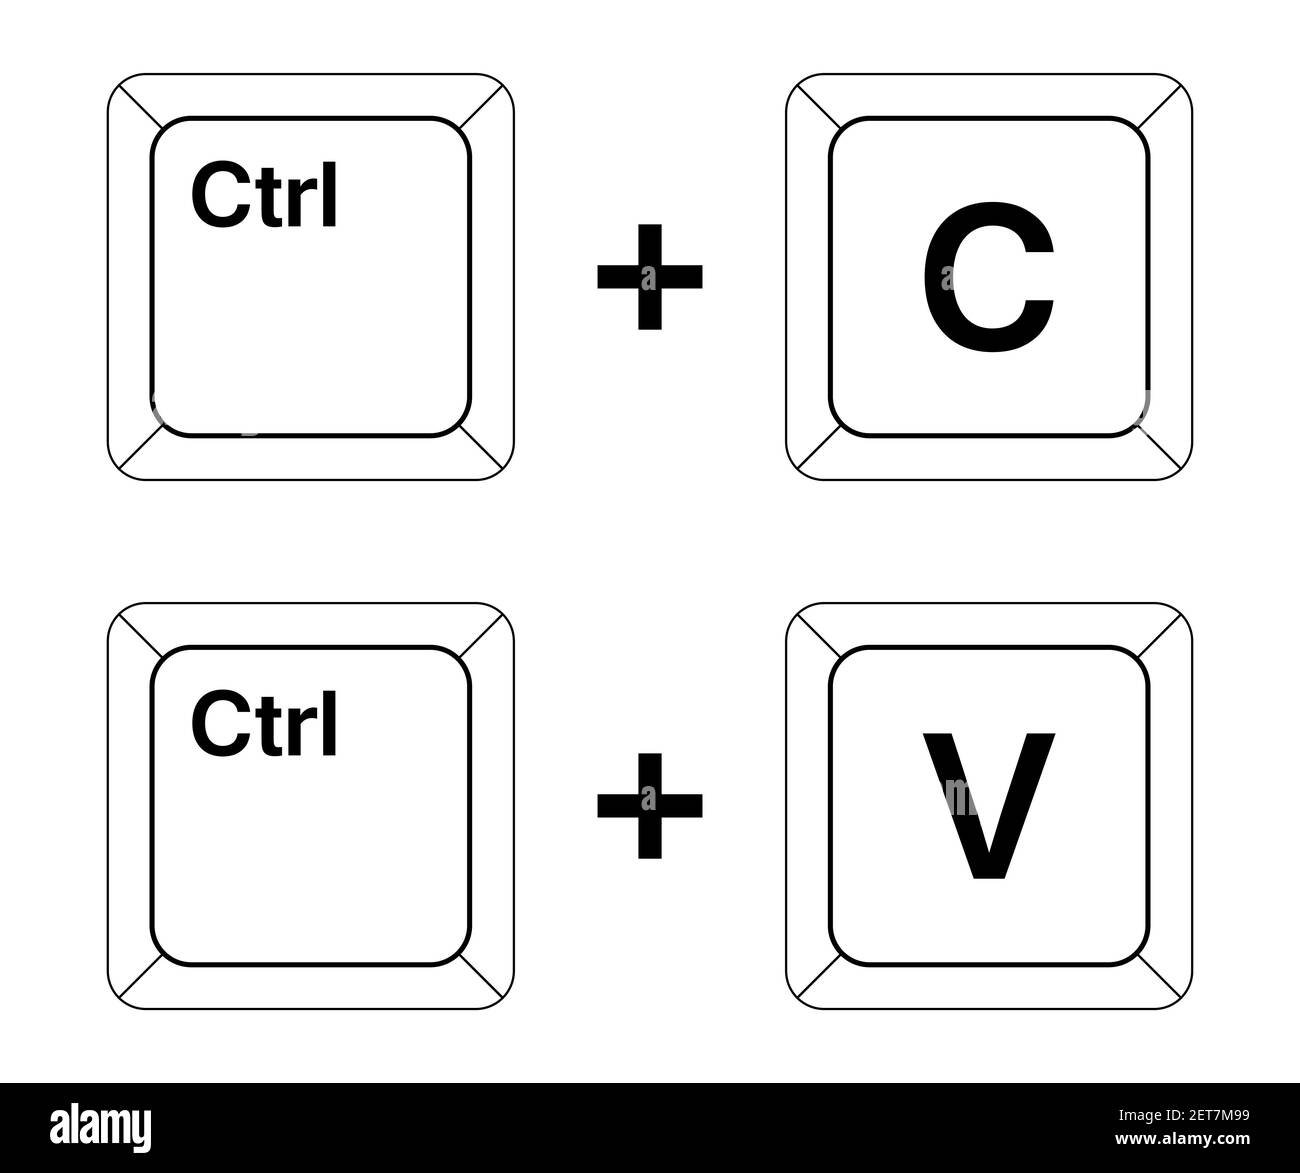 Teclas Ctrl C, Ctrl V en el teclado, copiar y pegar la combinación de teclas.  Inserte un método abreviado de teclado para dispositivos Windows. Iconos  del teclado del ordenador. Vect Imagen Vector